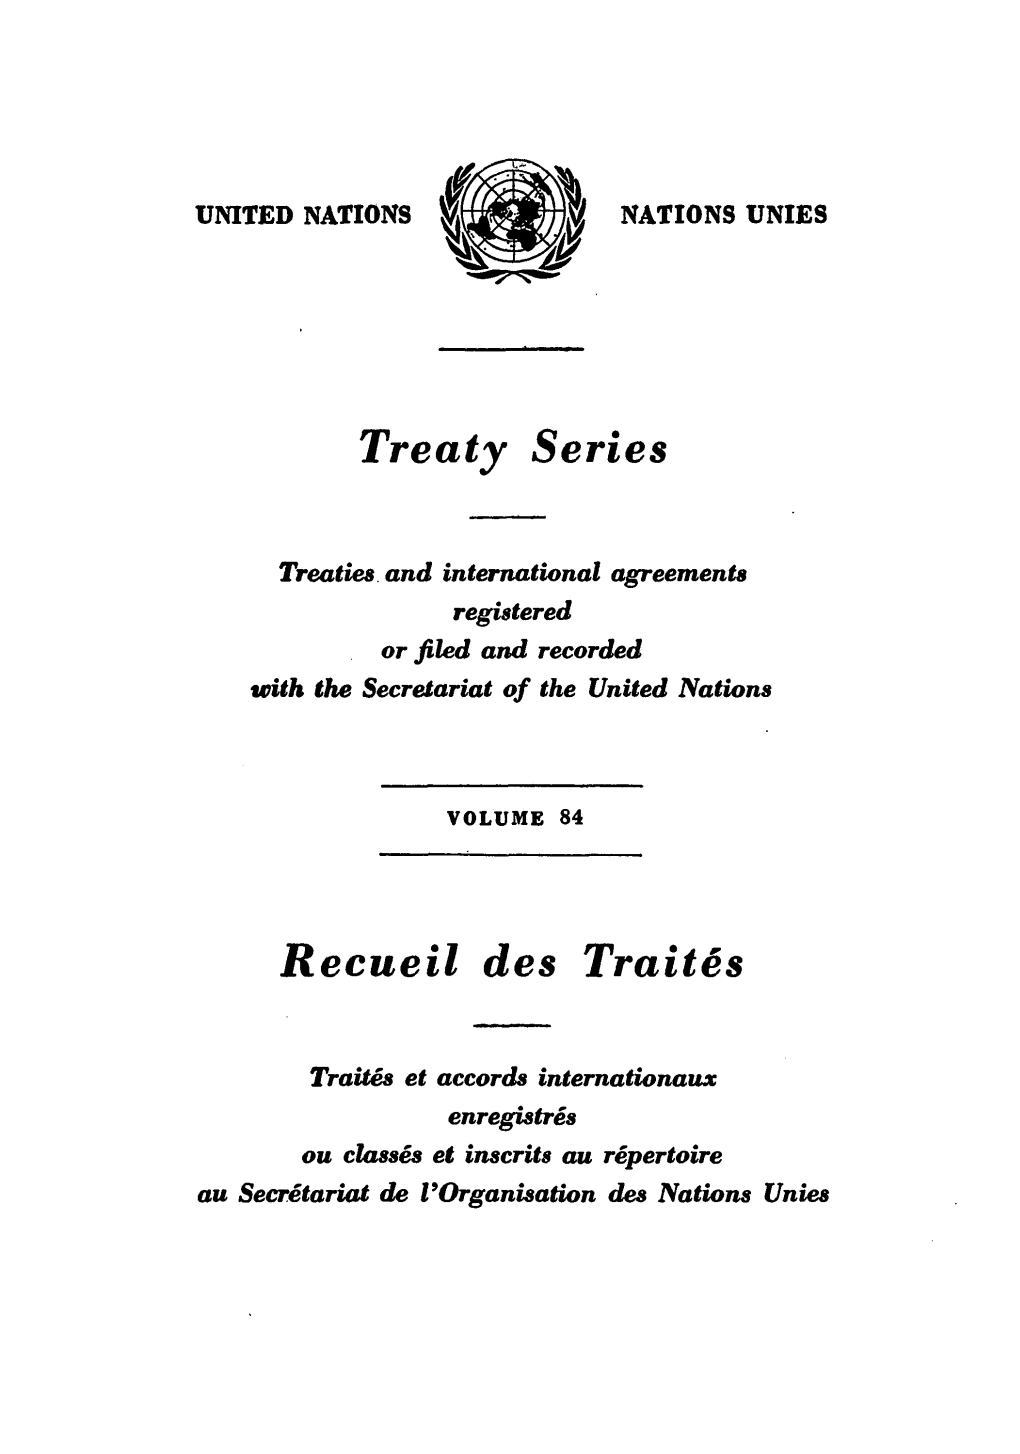 Treaty Series Recueil Des Traites